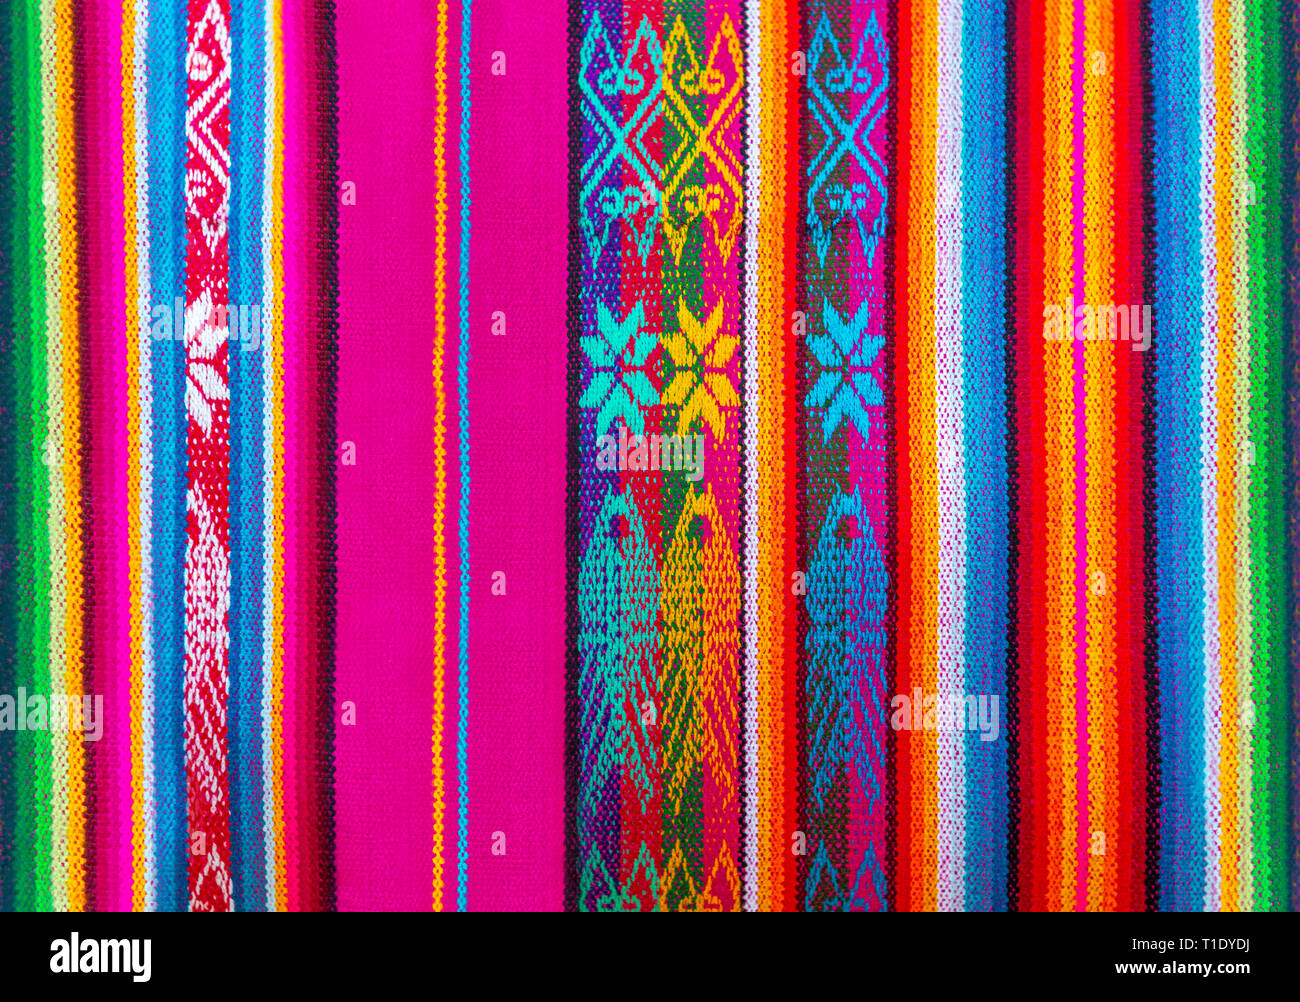 Bunte indigenen Quechua Textil- oder Stoff traditionell für die Anden von Peru, Ecuador und Bolivien. Auf einem lokalen Markt in Cusco fotografiert. Stockfoto